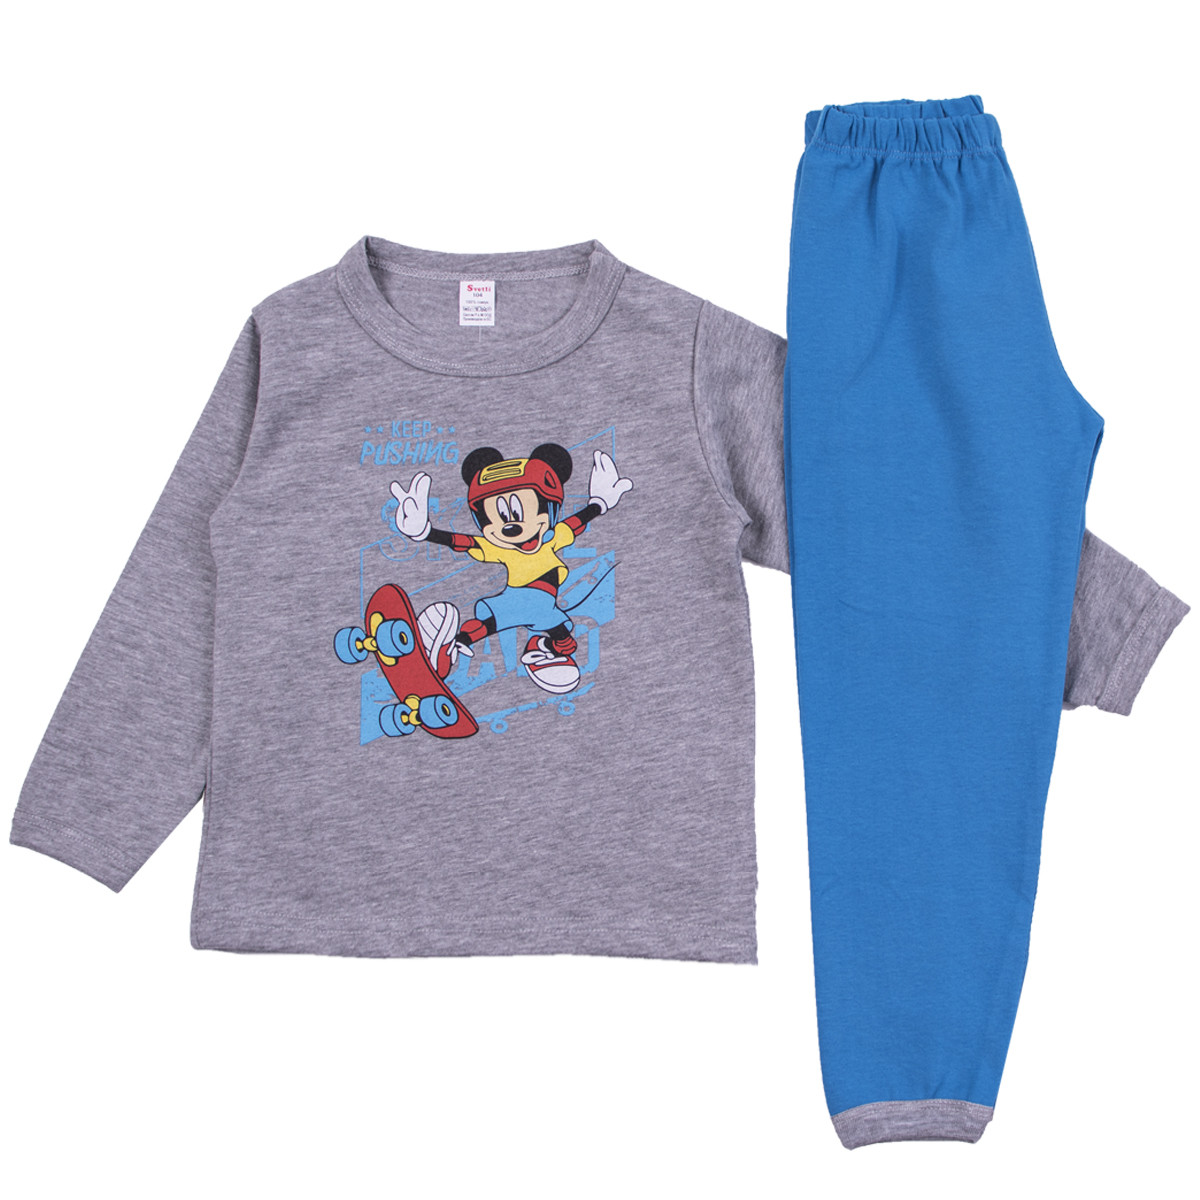 Плътна памучна пижама  "Pushing" в сиво и синьо